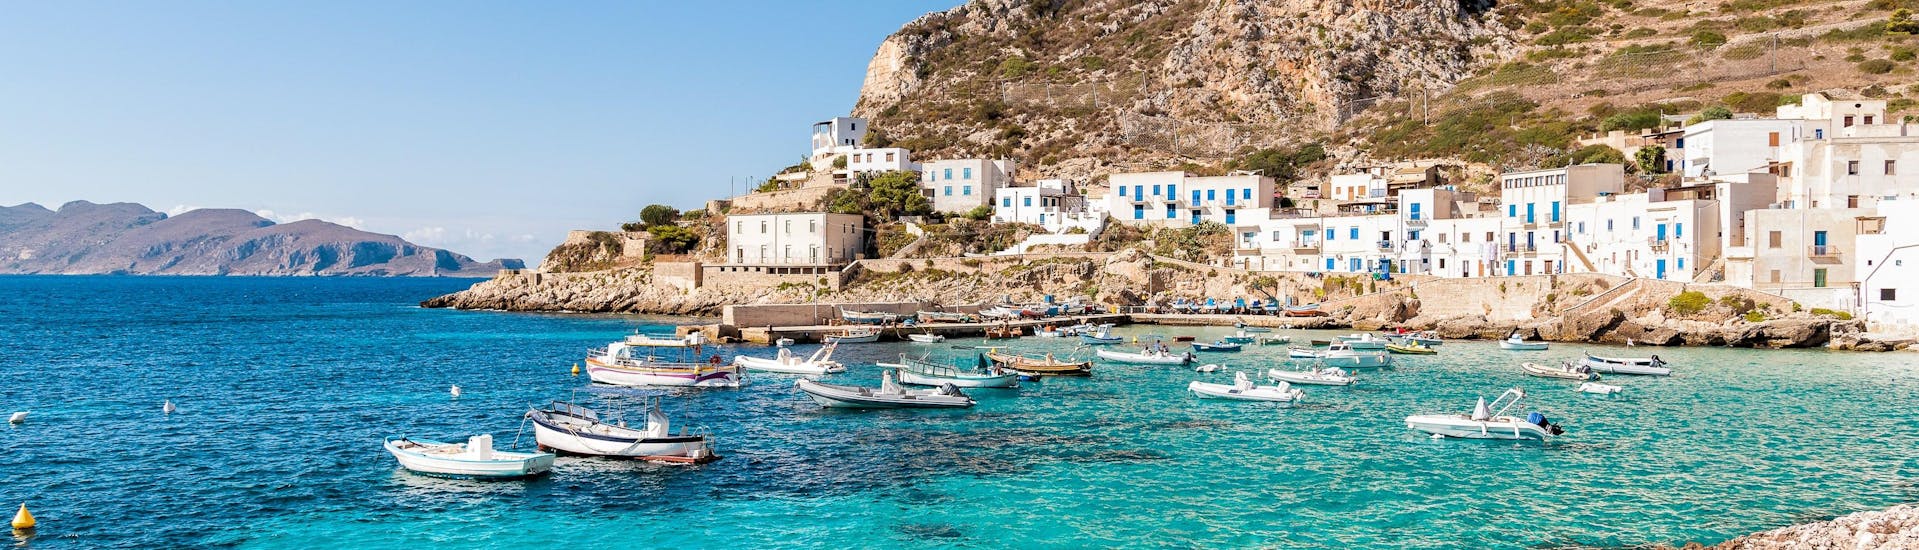 La vista della bellissima costa che i visitatori possono ammirare durante un giro in barca all’isola di Levanzo in Sicilia.